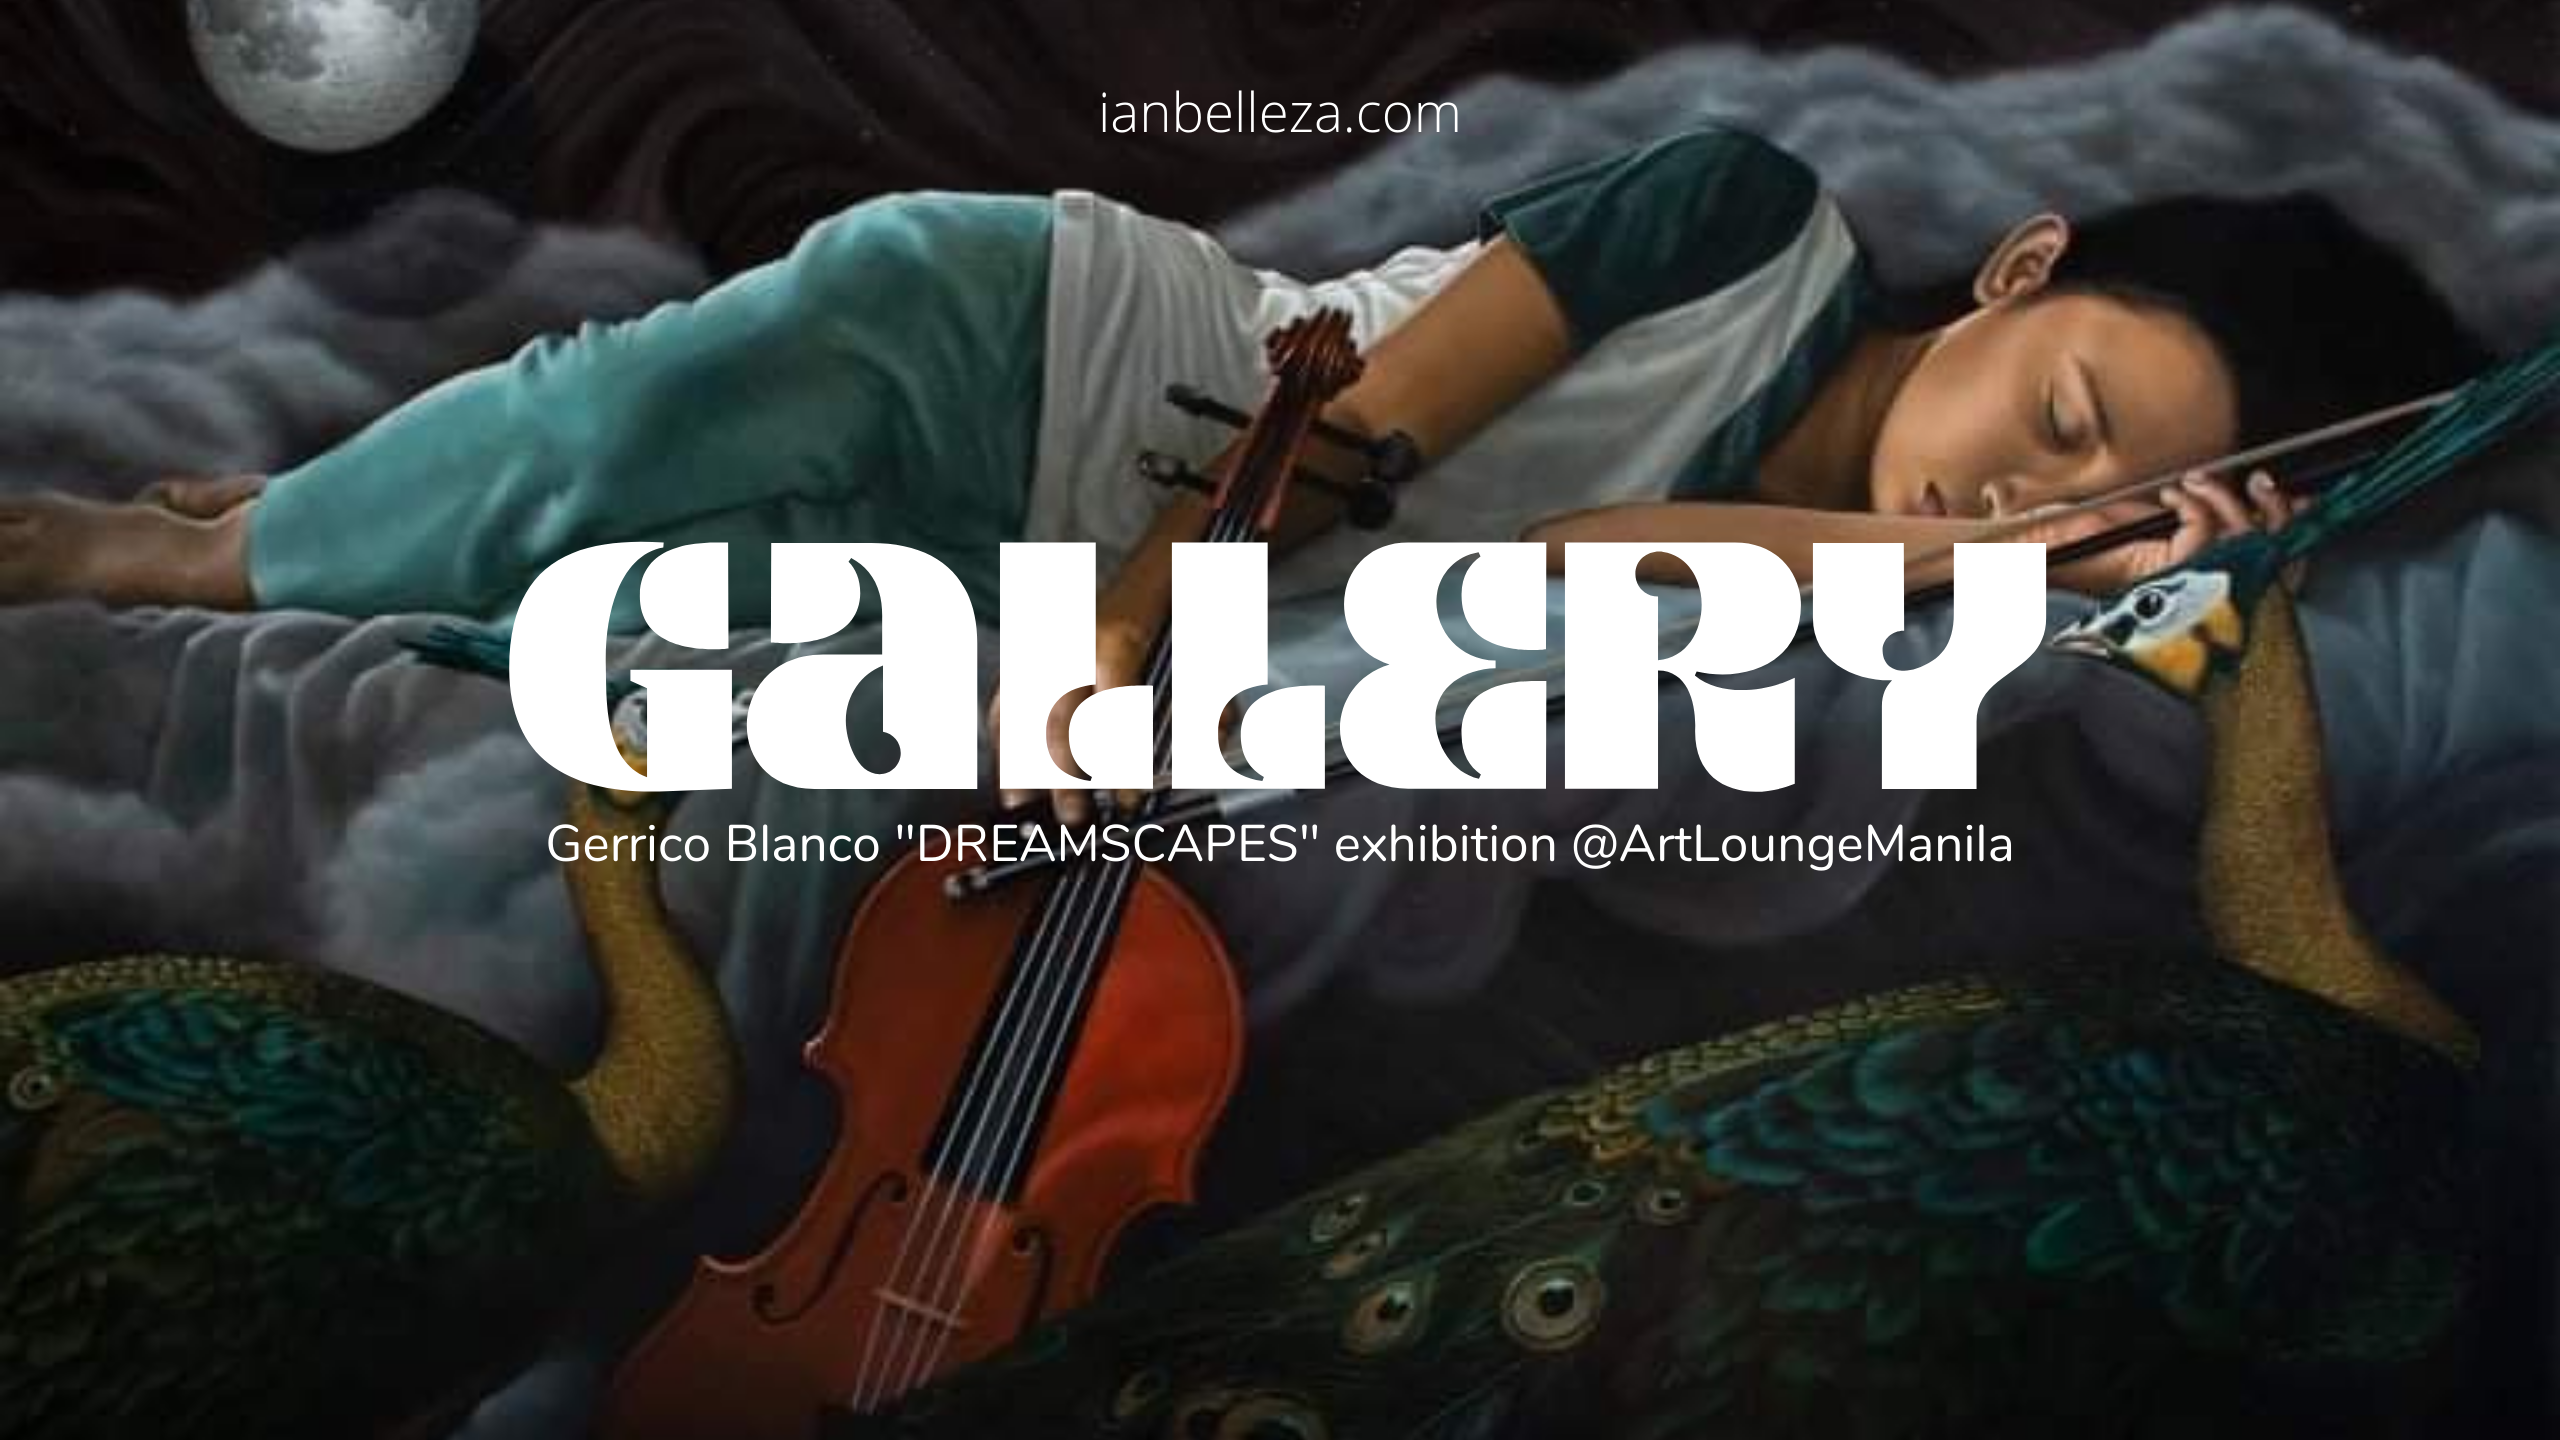 Gallery: Gerrico Blanco “DREAMSCAPES” exhibition @ArtLoungeManila